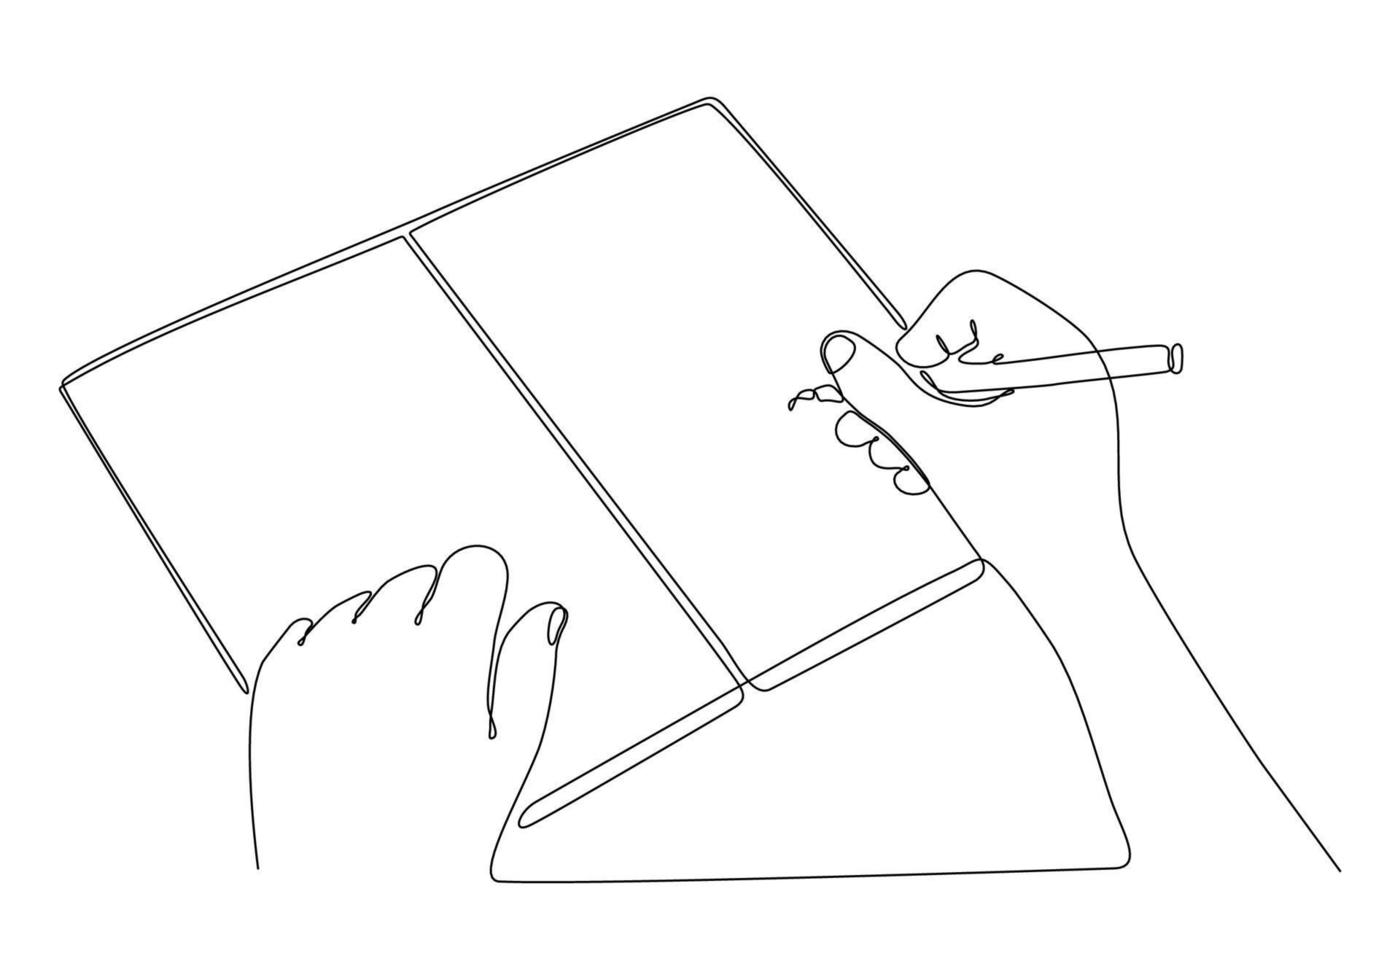 desenho de linha contínua da mão de um homem escrevendo algo em um bloco de notas isolado em uma ilustração vetorial de fundo branco vetor